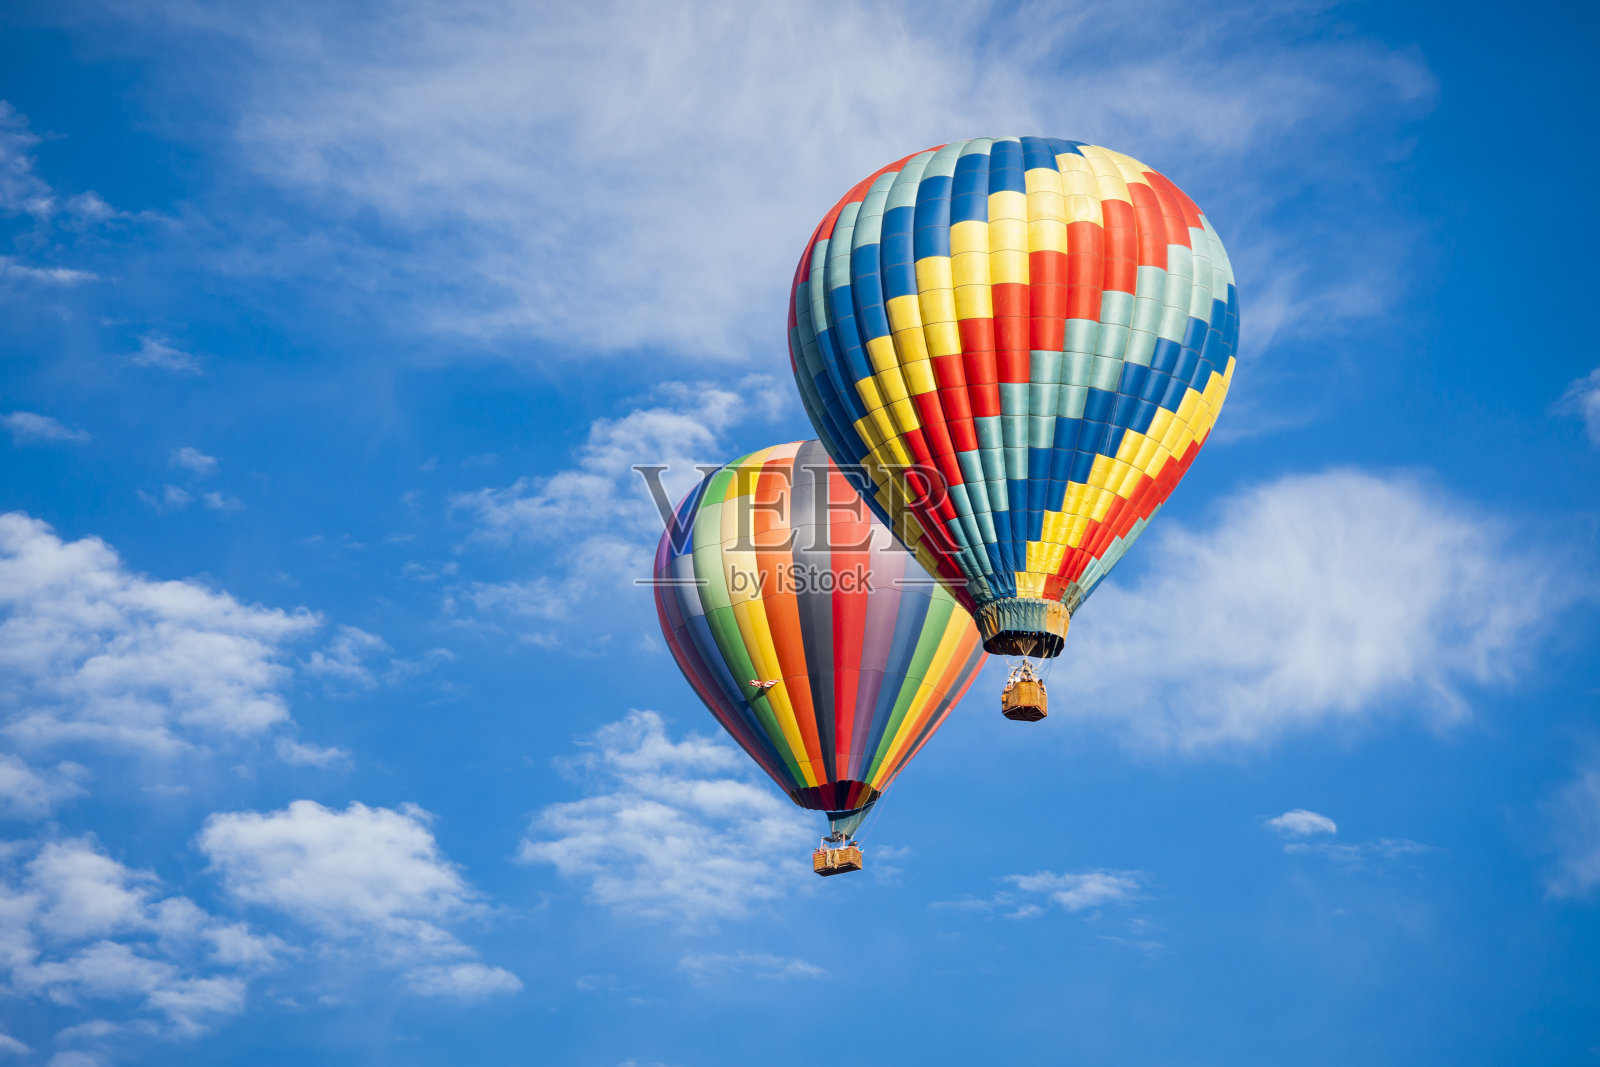 壁纸 : 热气球, 天空, 航空运动, 跳伞, 休闲, 旅游, 降落伞 3966x3000 - - 895089 - 电脑桌面壁纸 ...